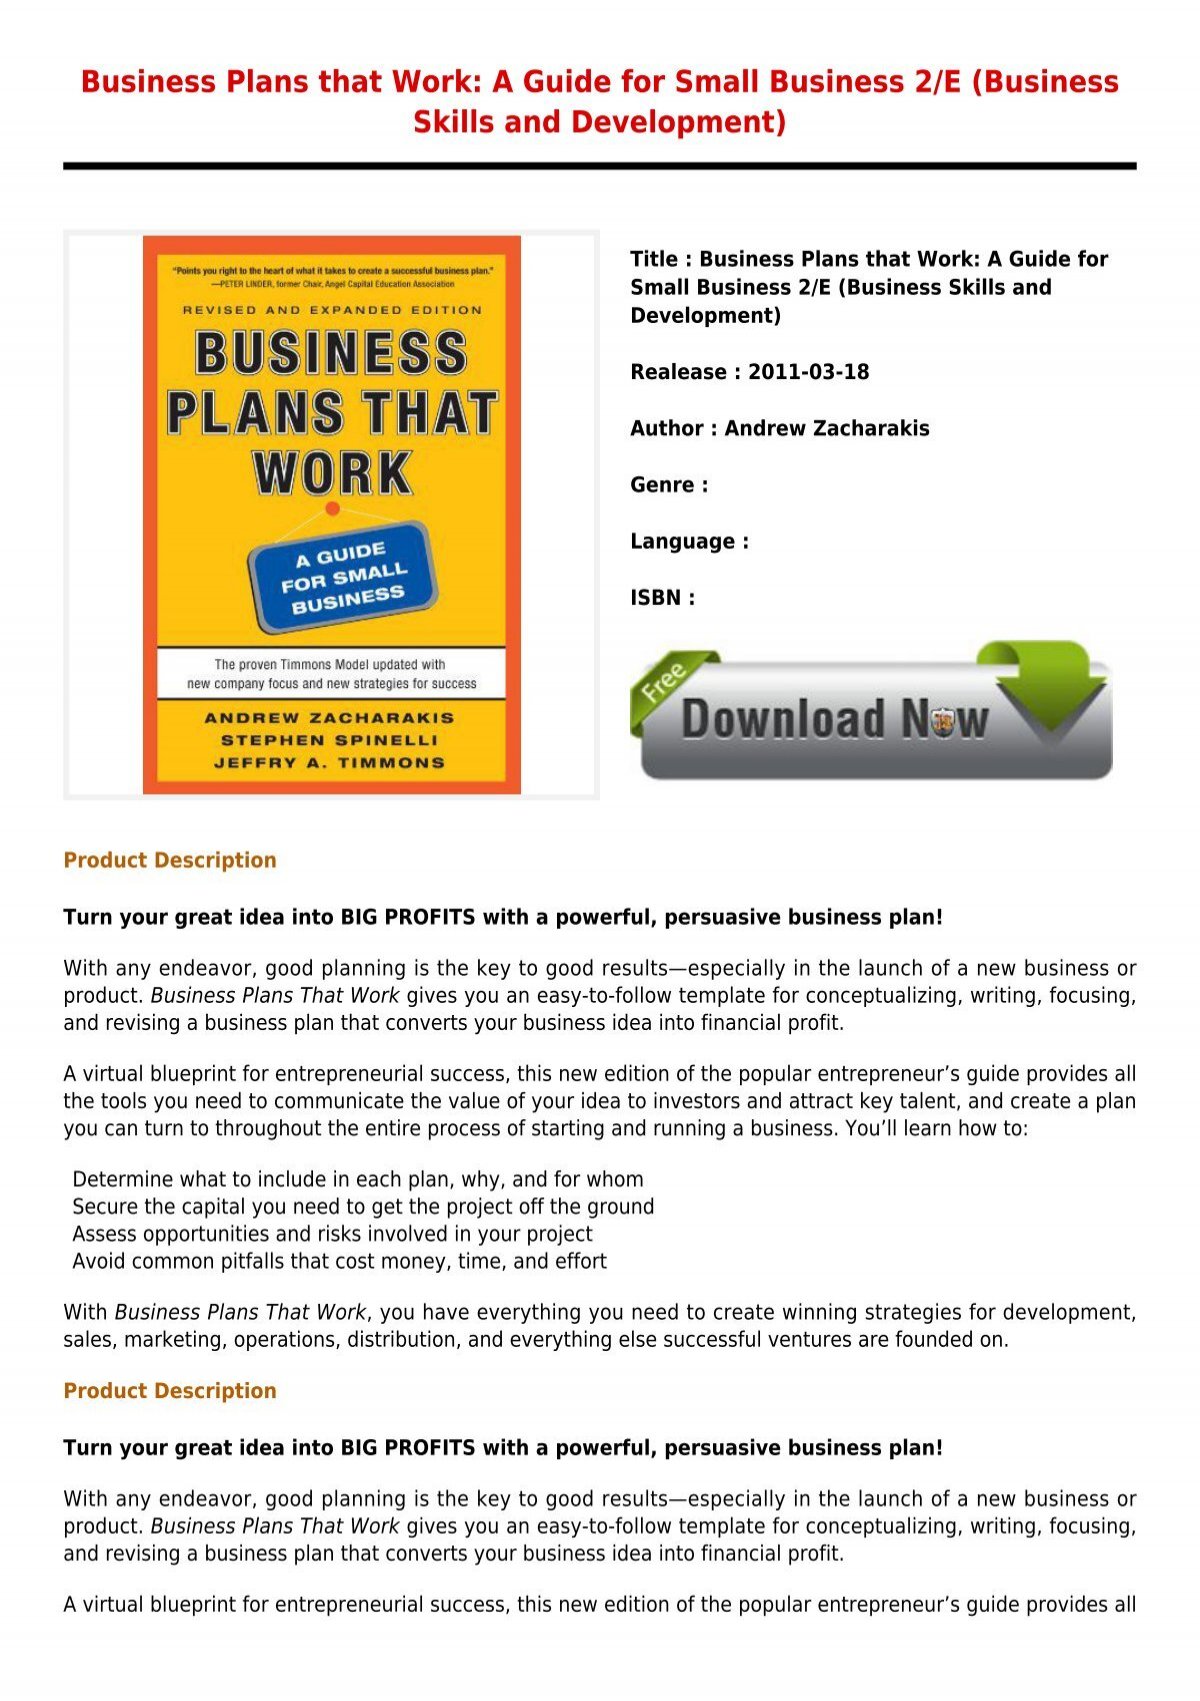 e book business plan pdf